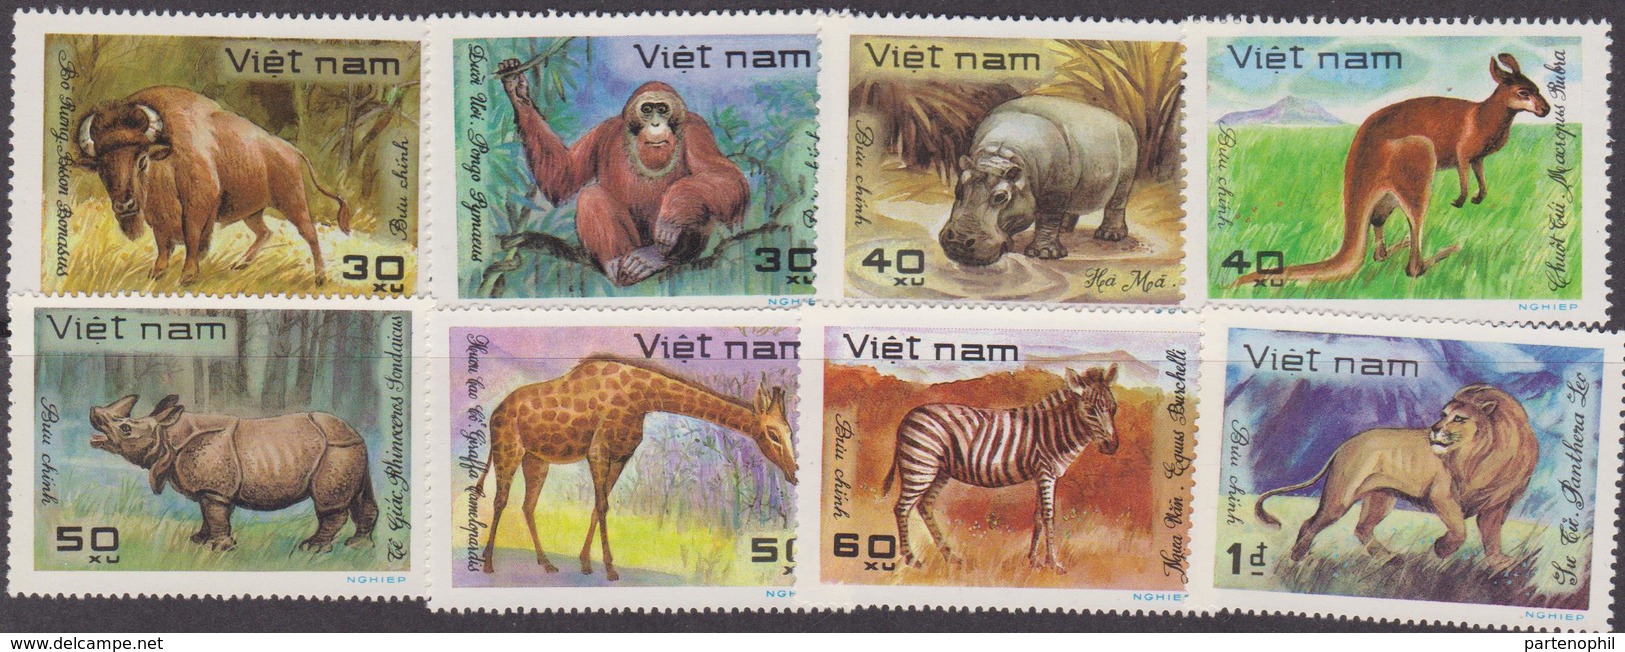 Vietnam 1982 Anumals Set MNH - Vietnam